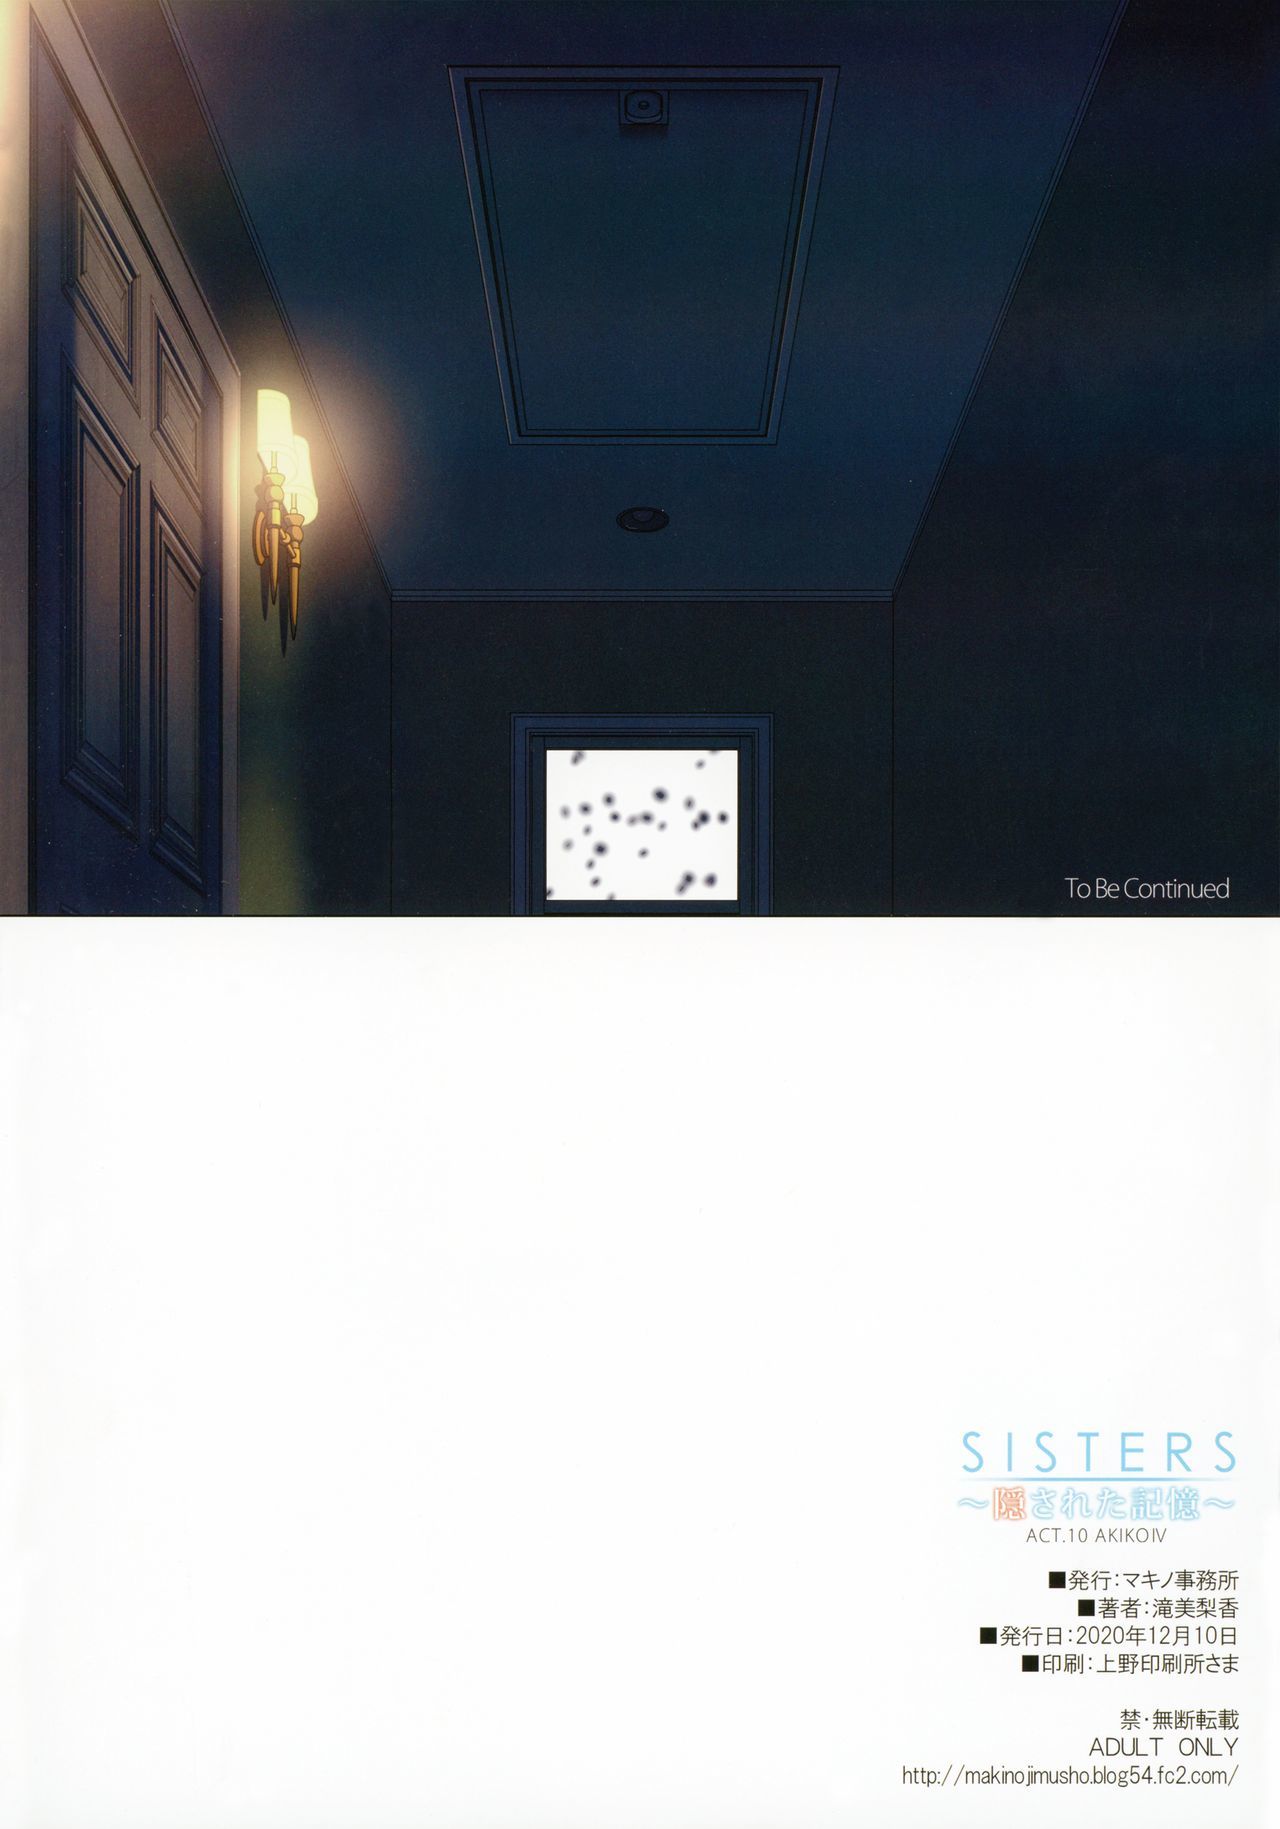 SISTERS〜角里田キオク〜ACT.10AKIKOⅣ